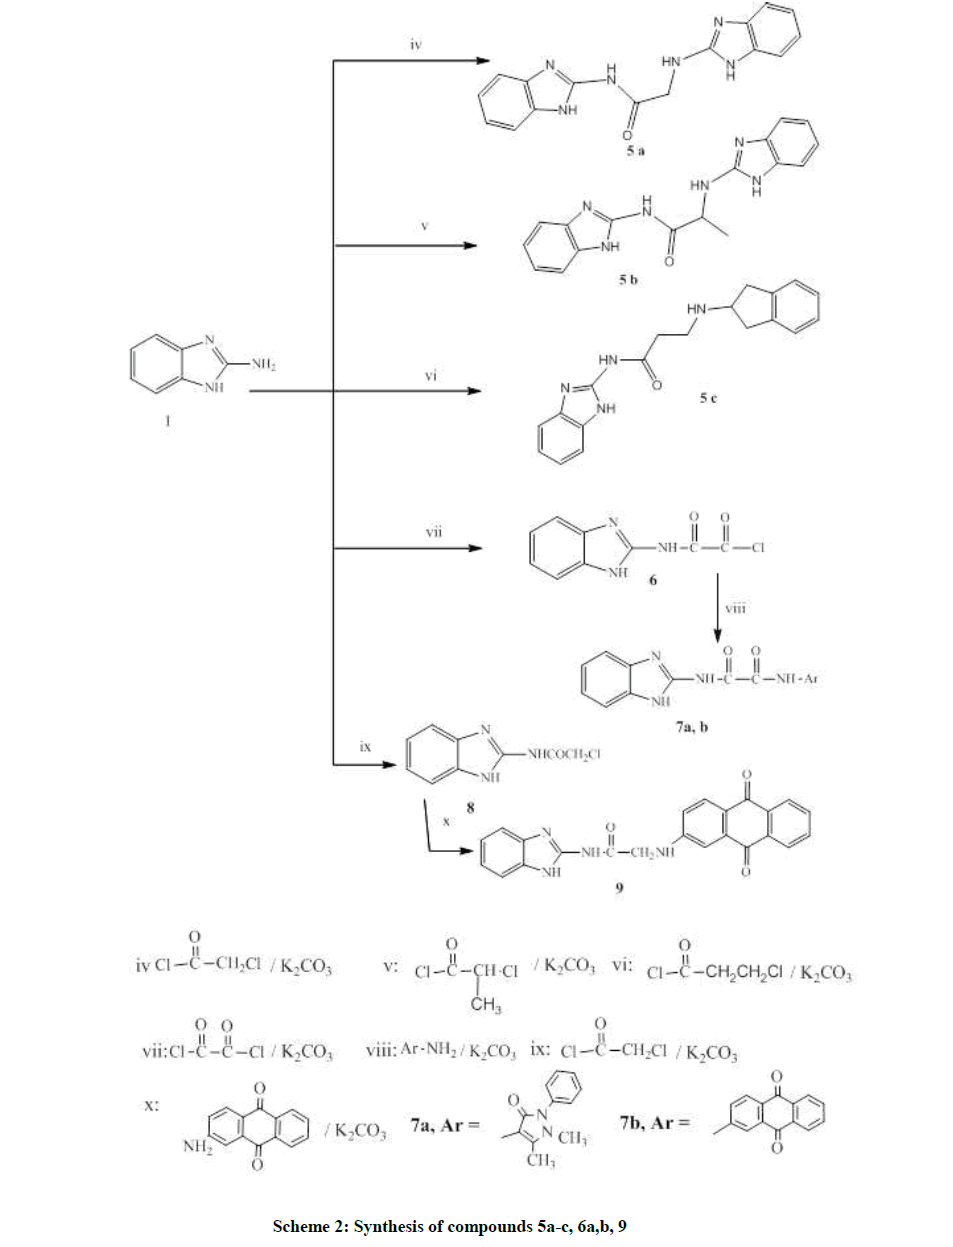 derpharmachemica-compounds